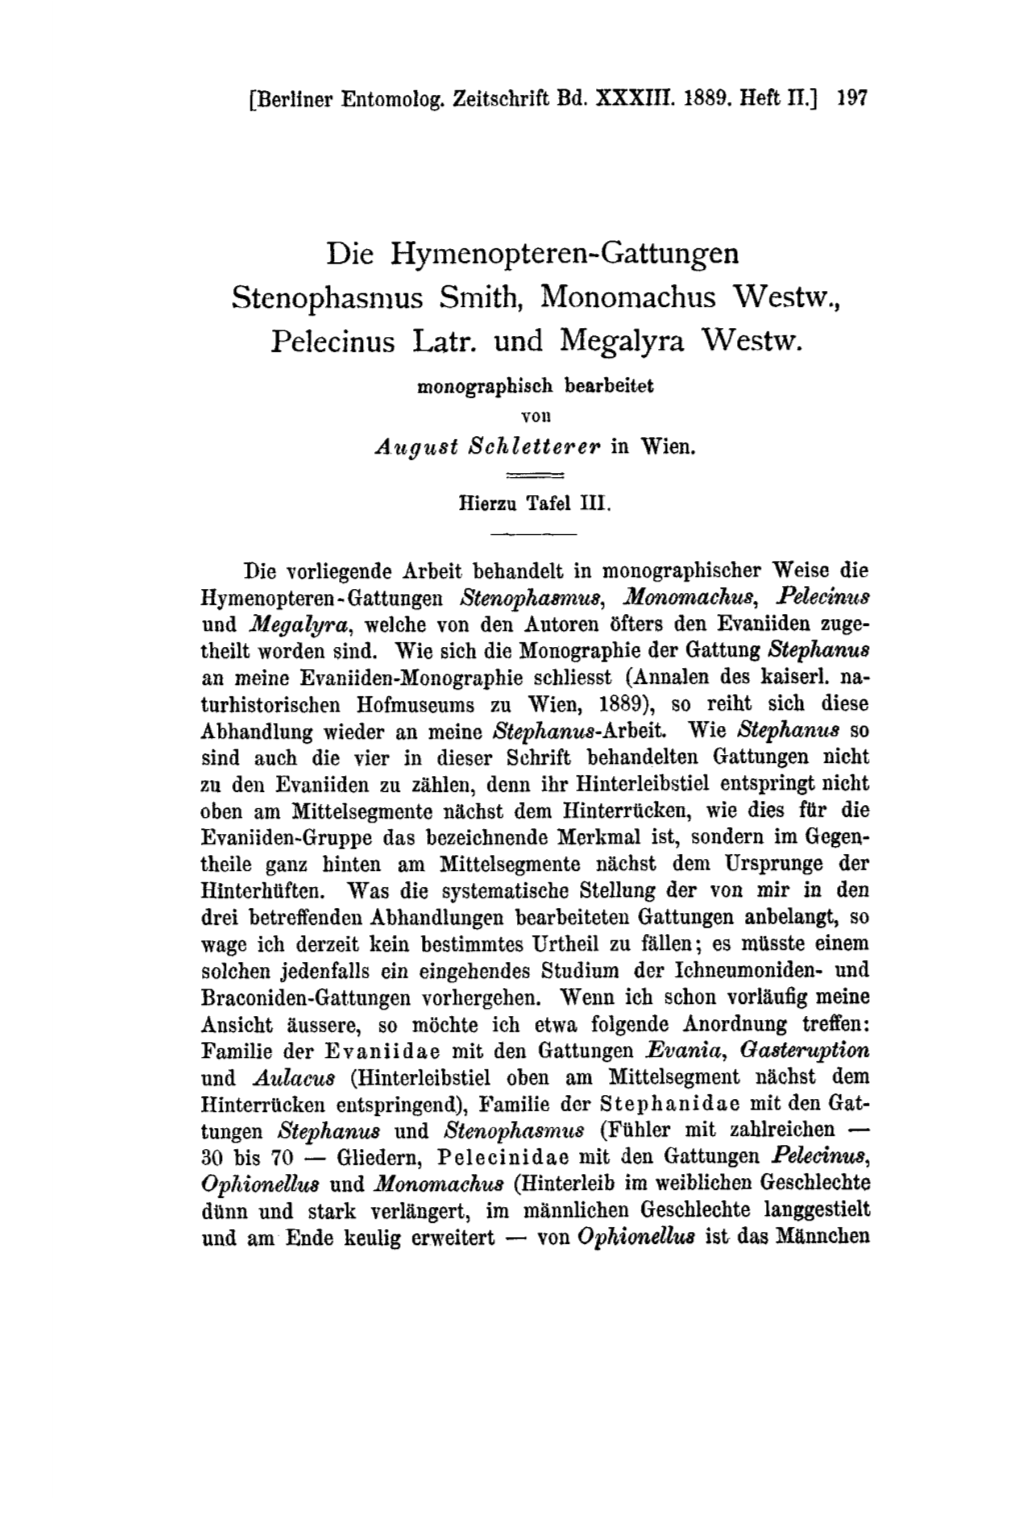 Die Hymenopteren-Gattungen Stenophasmus Smith